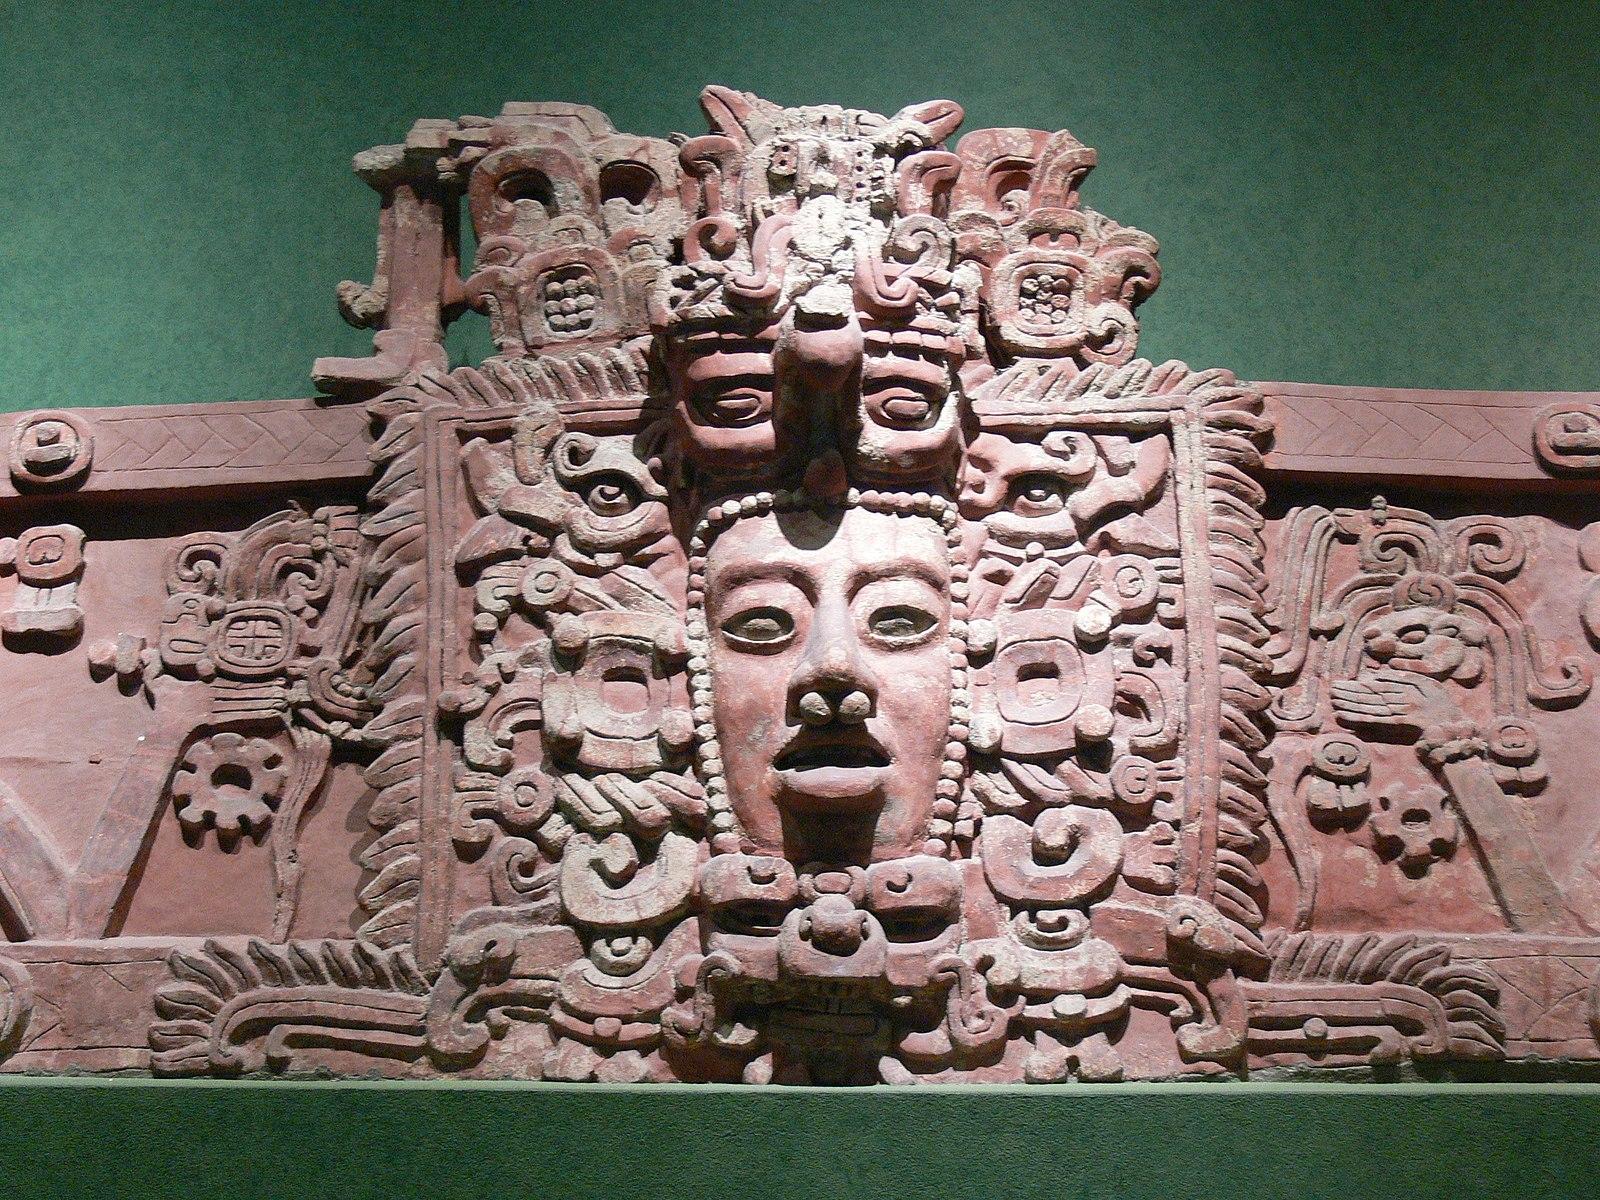 Mayan art